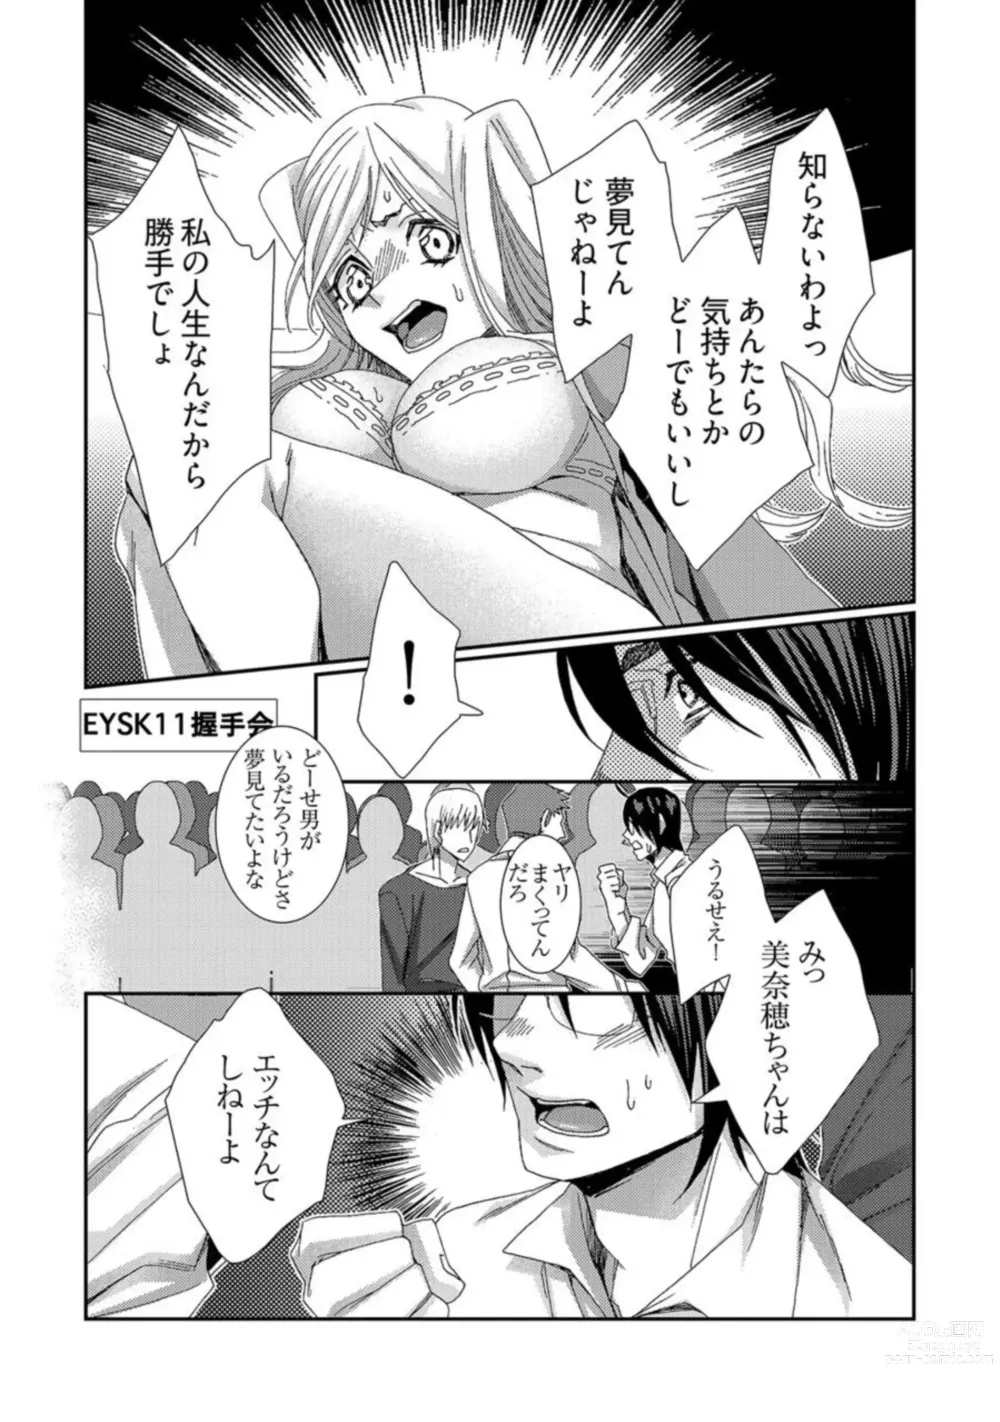 Page 11 of manga Jikan o Ayatsuri Mukyoka Tanetsuke - Shojo kara Ninshin made Mugen Loop Vol. 2